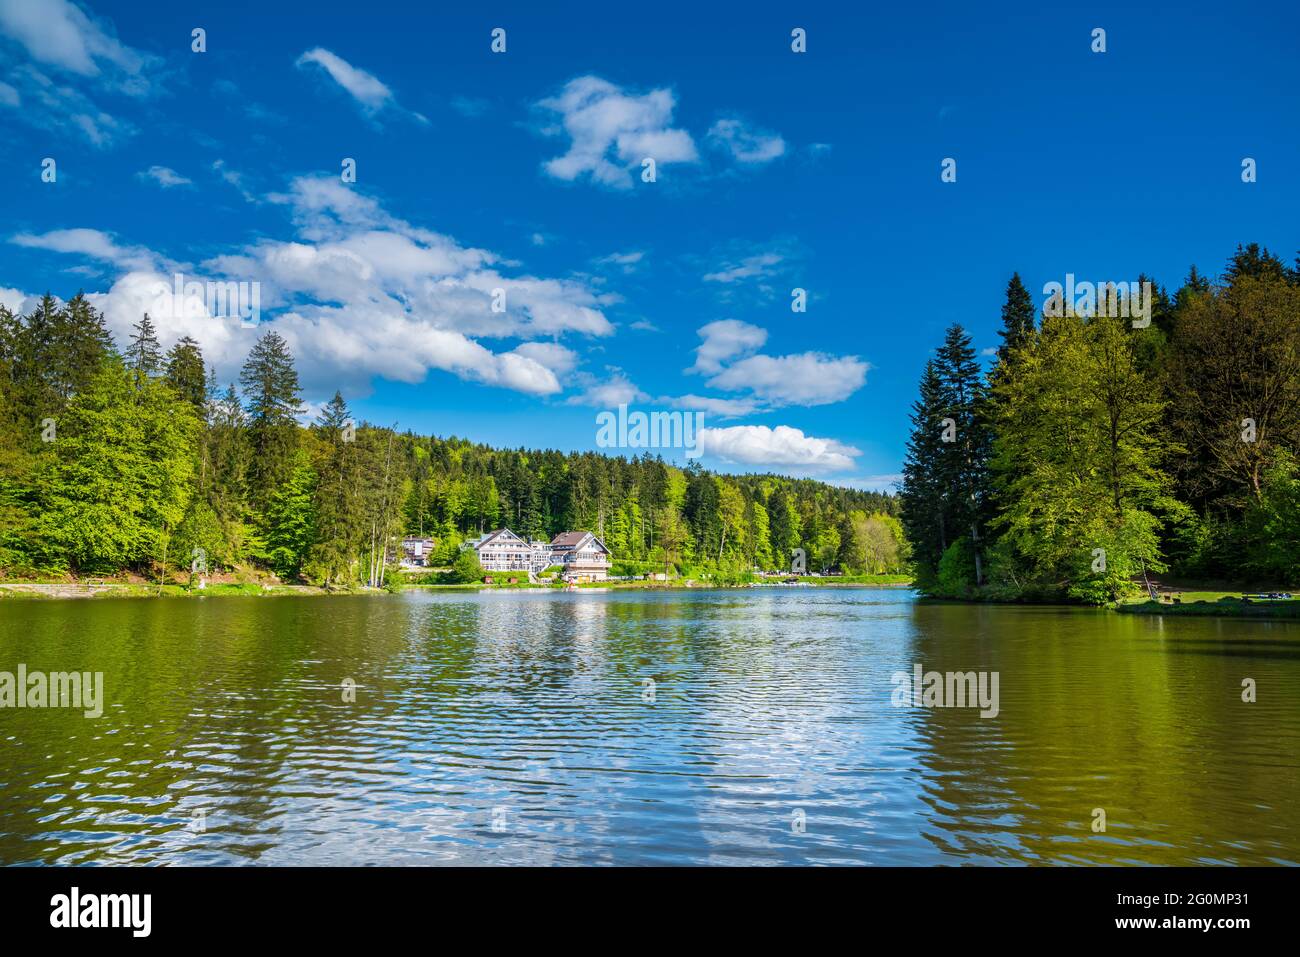 Alemania, lago Ebnisee cerca de kaisersbach en idílico bosque verde paisaje natural con casas antiguas y hermoso paisaje bajo cielo azul Foto de stock